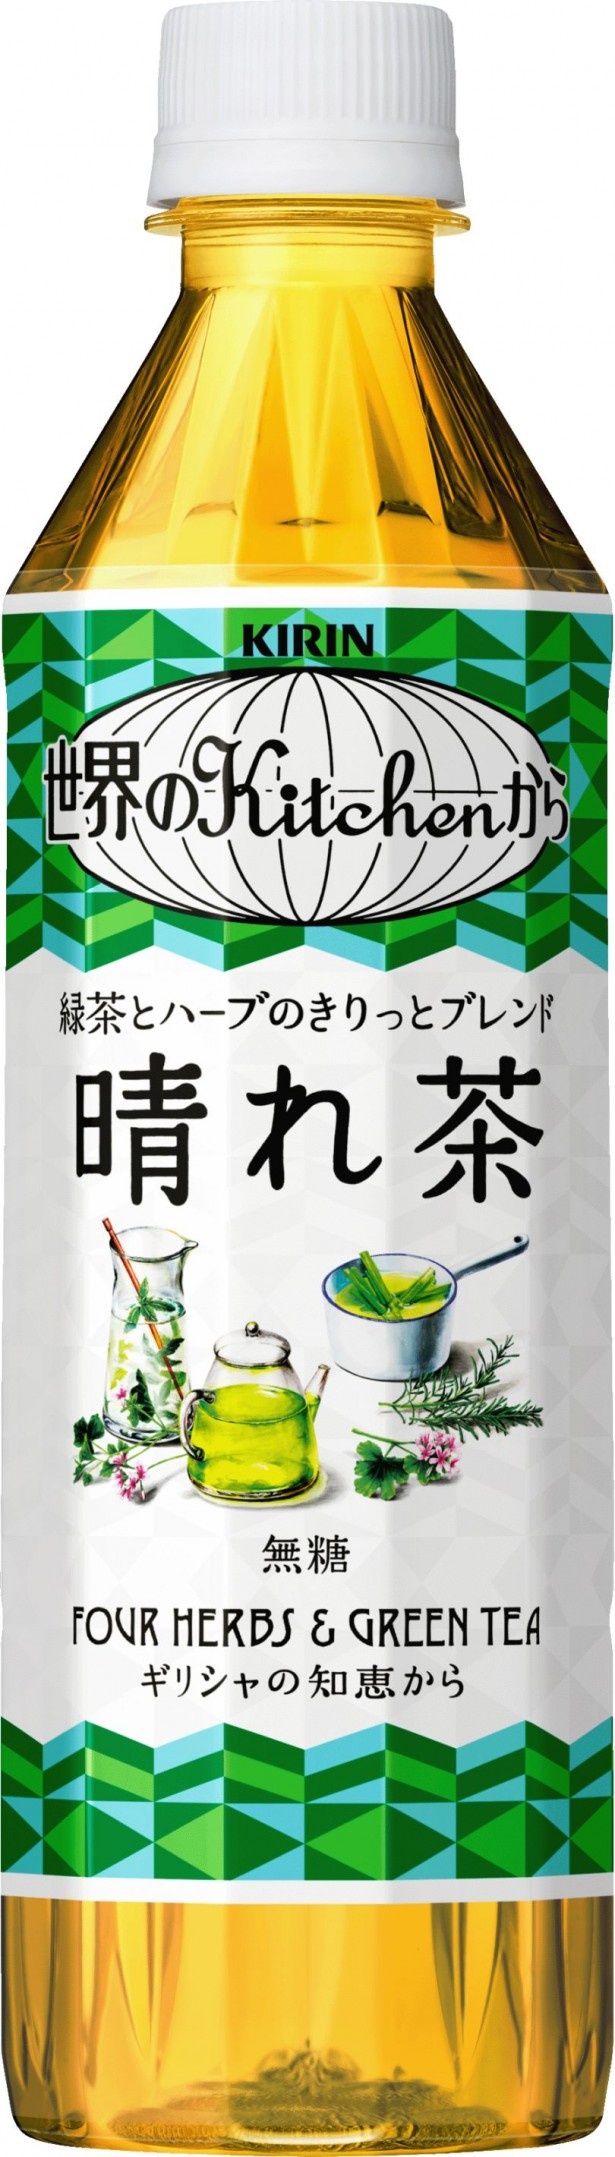 「世界のKitchenから」無糖ハーブ緑茶登場